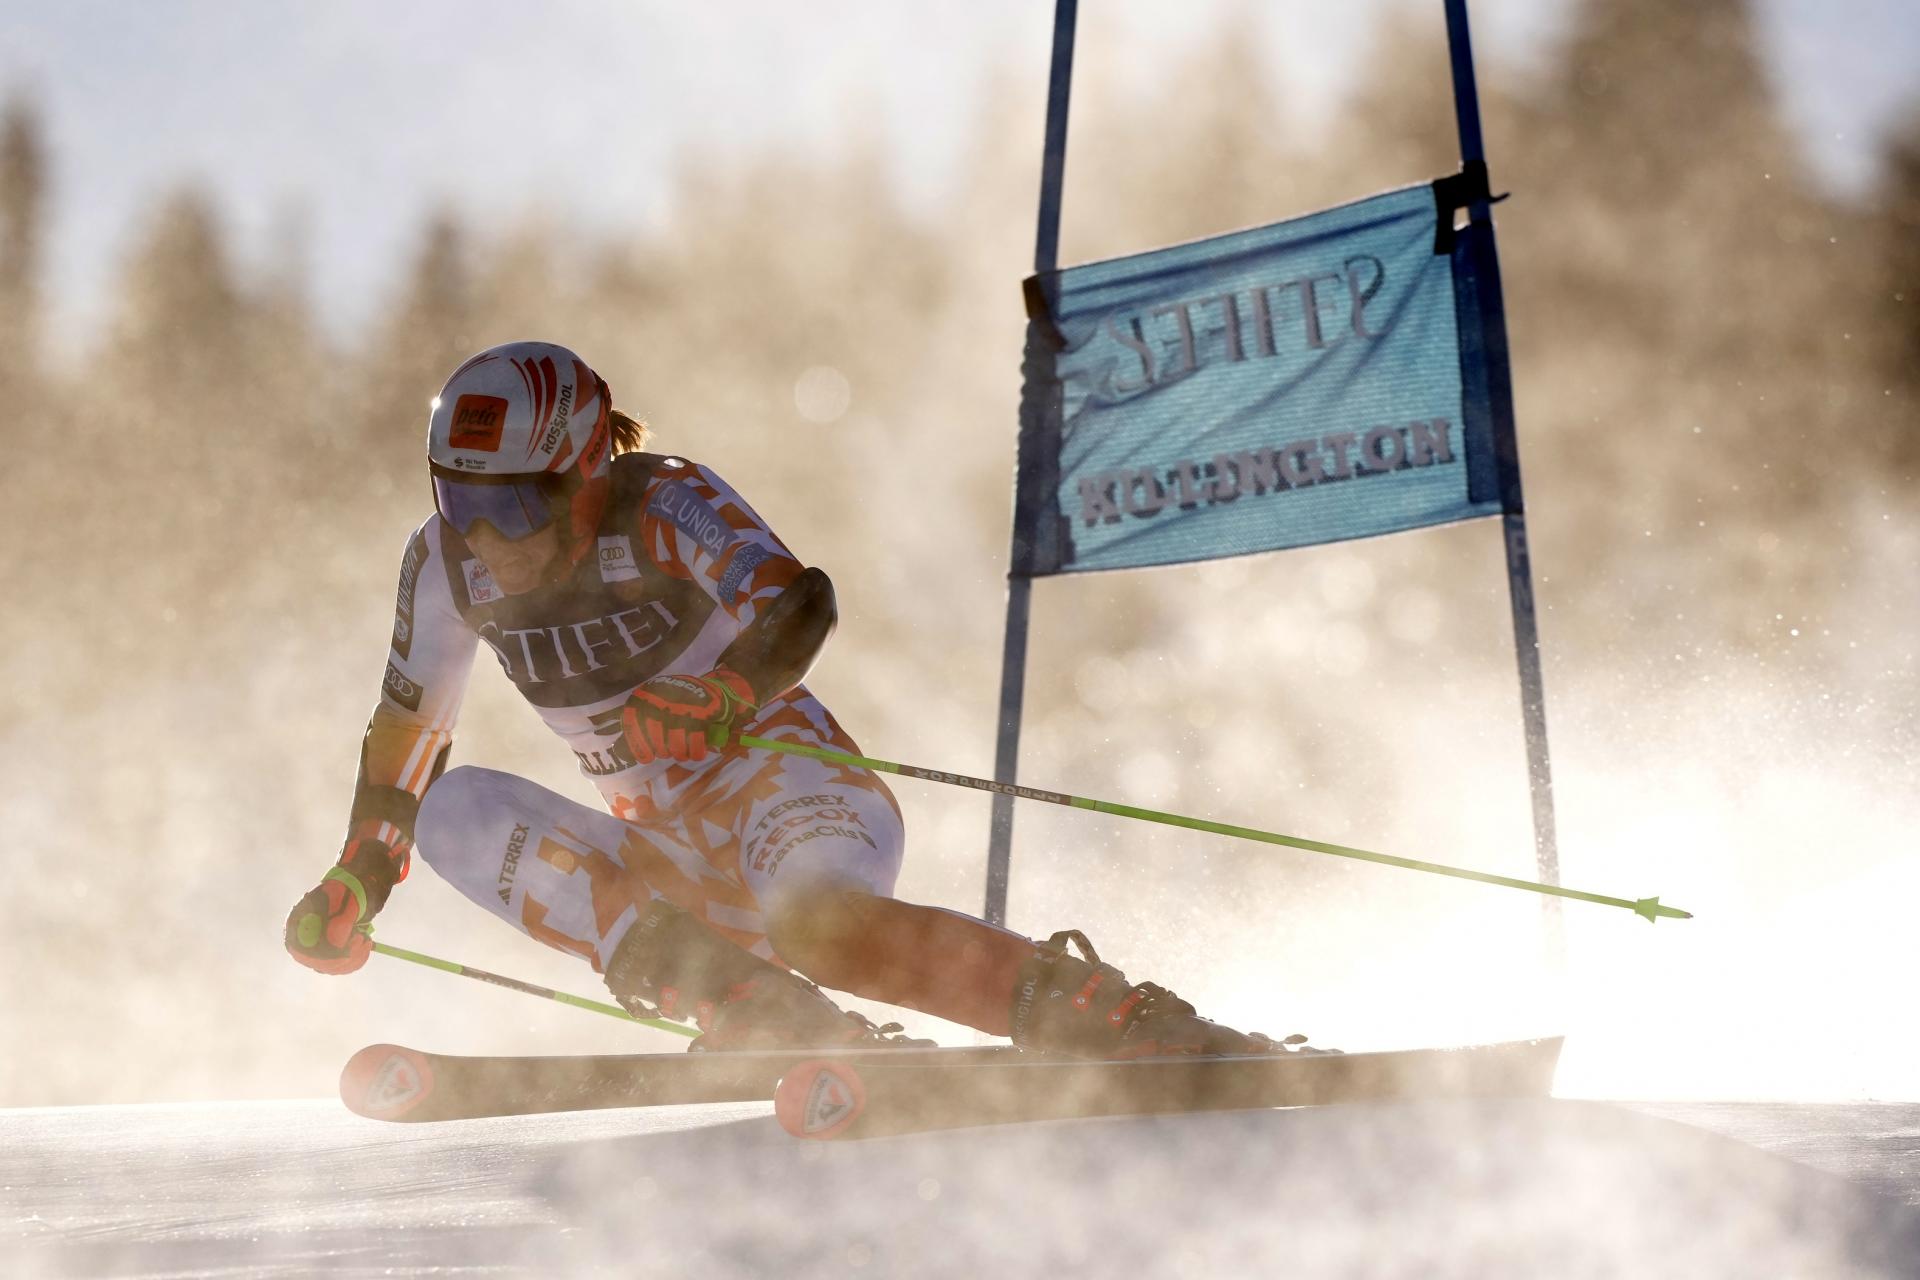 Vlhová skončila v slalome Svetového pohára desiata, Gutová-Behramiová vyhrala aj druhý obrák sezóny